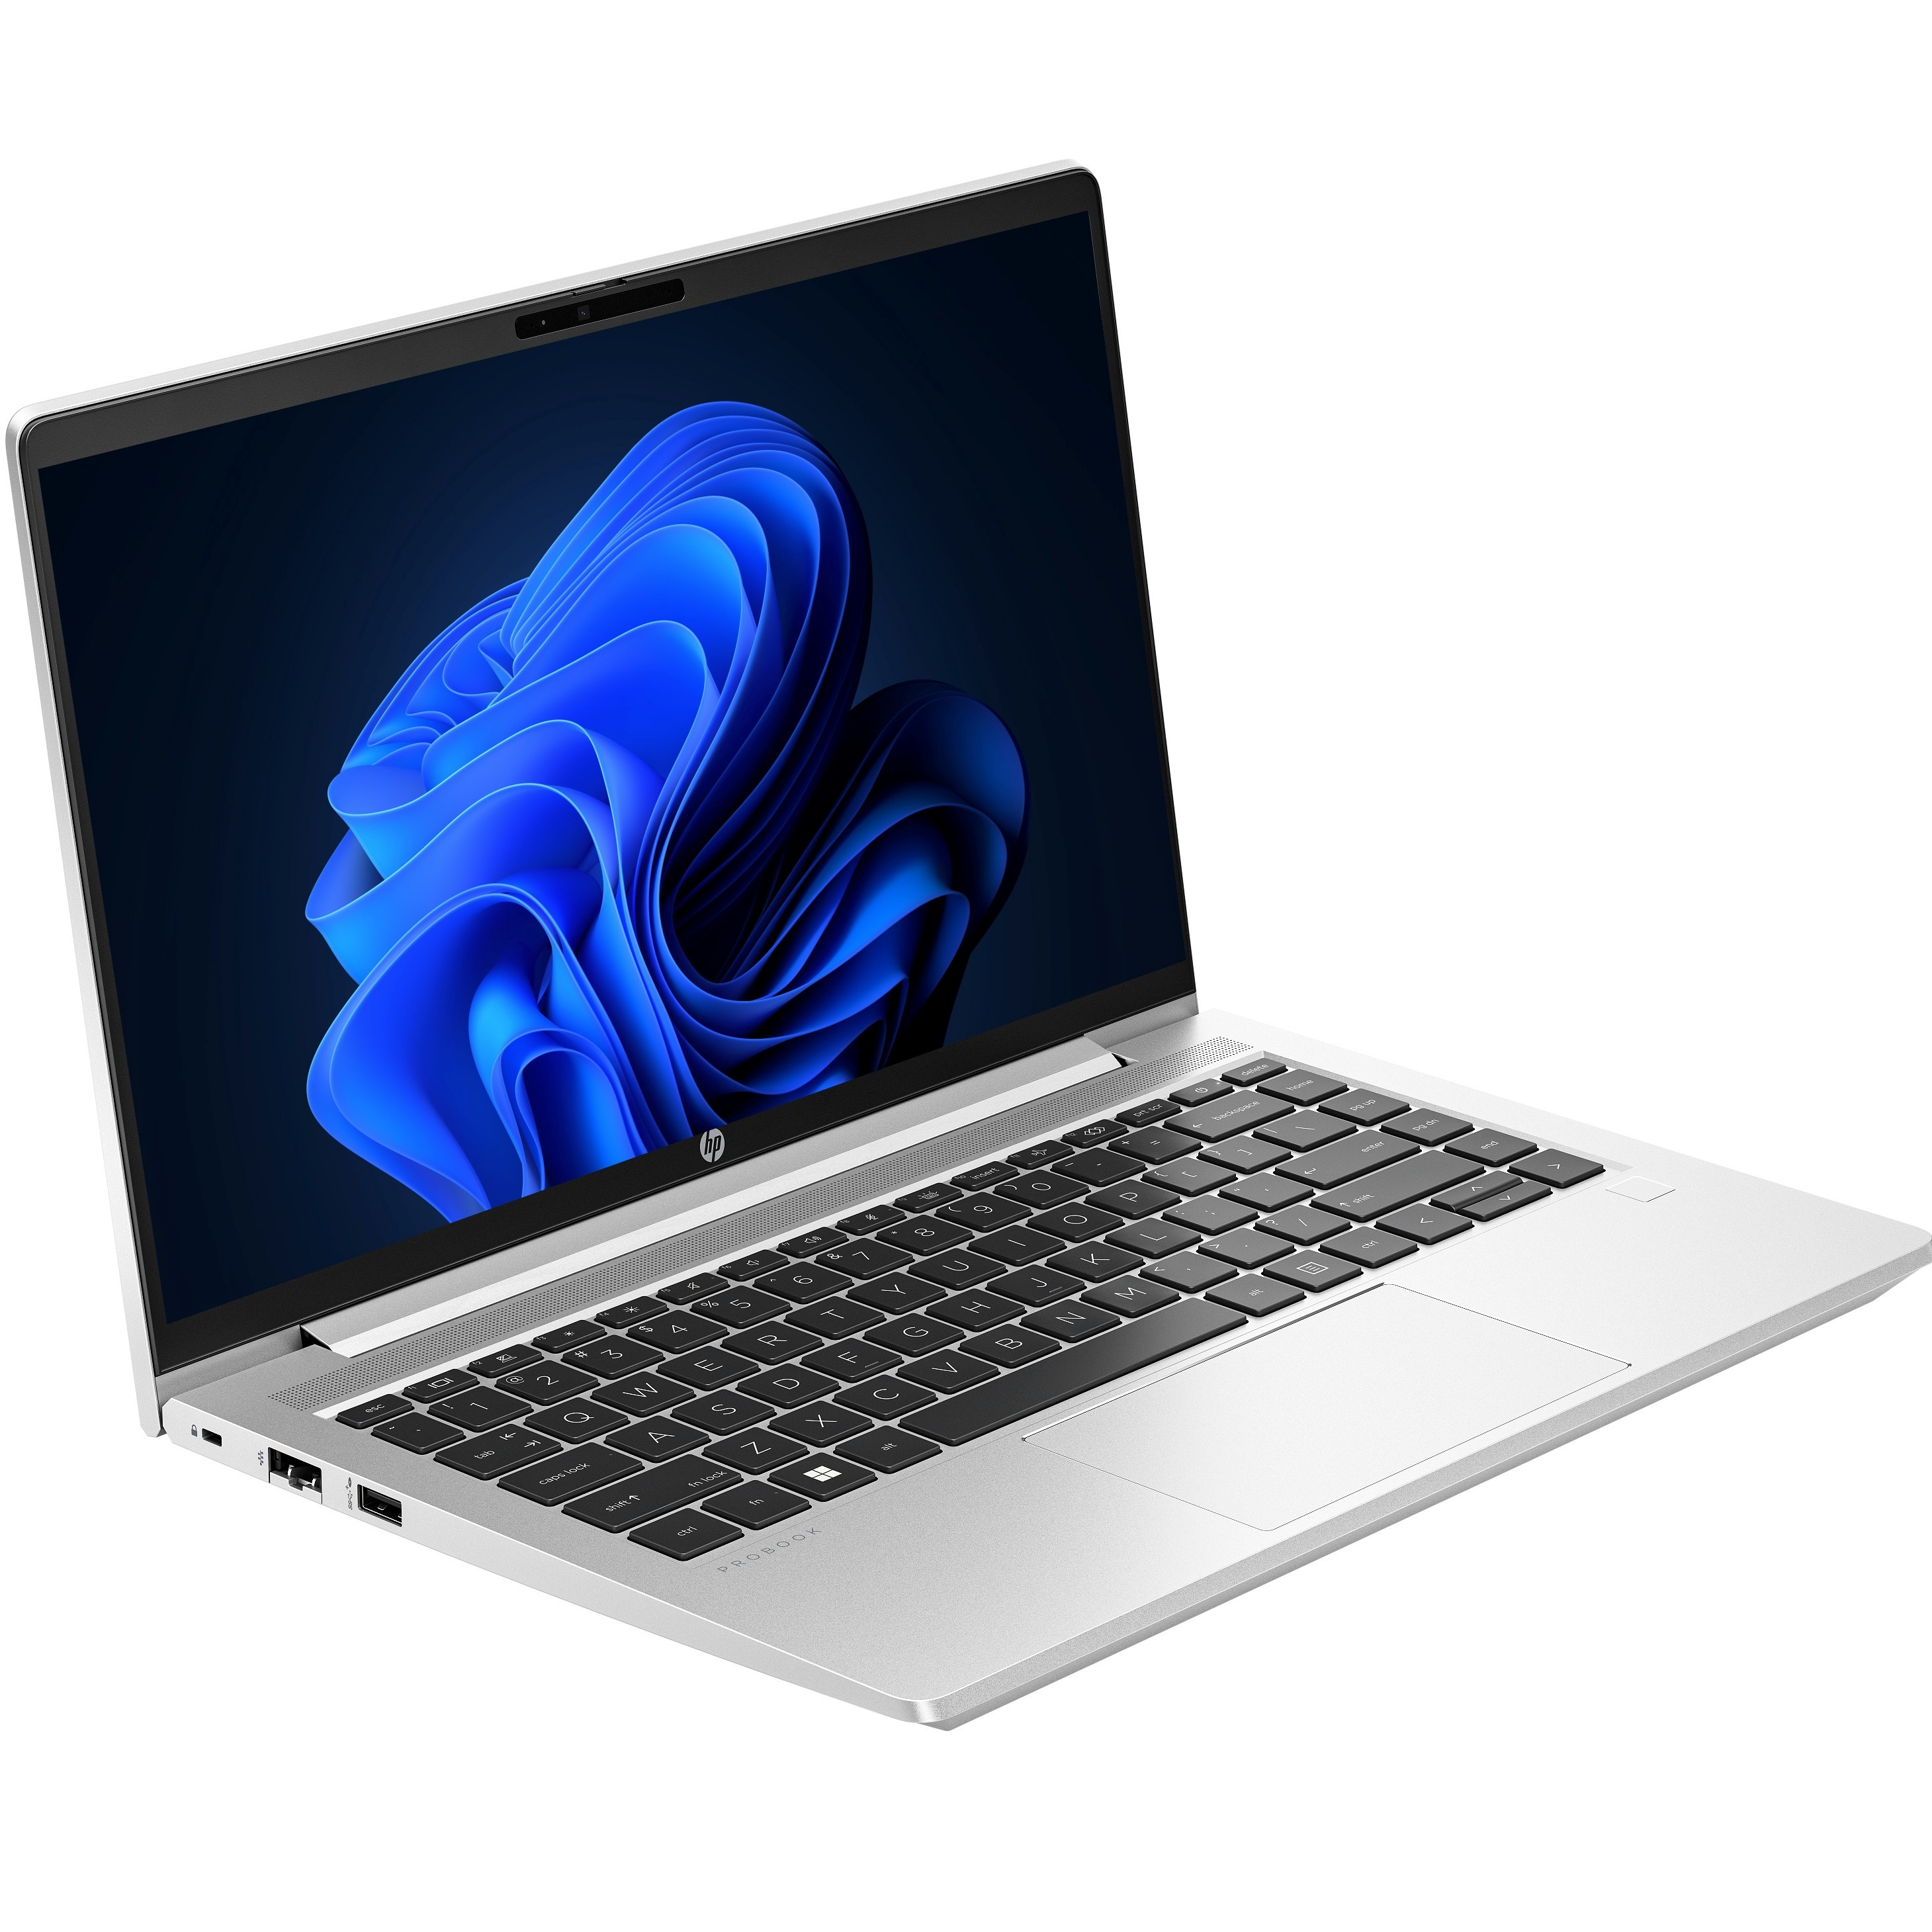 Ноутбук HP Probook 445-g10 (85c00ea)фото1